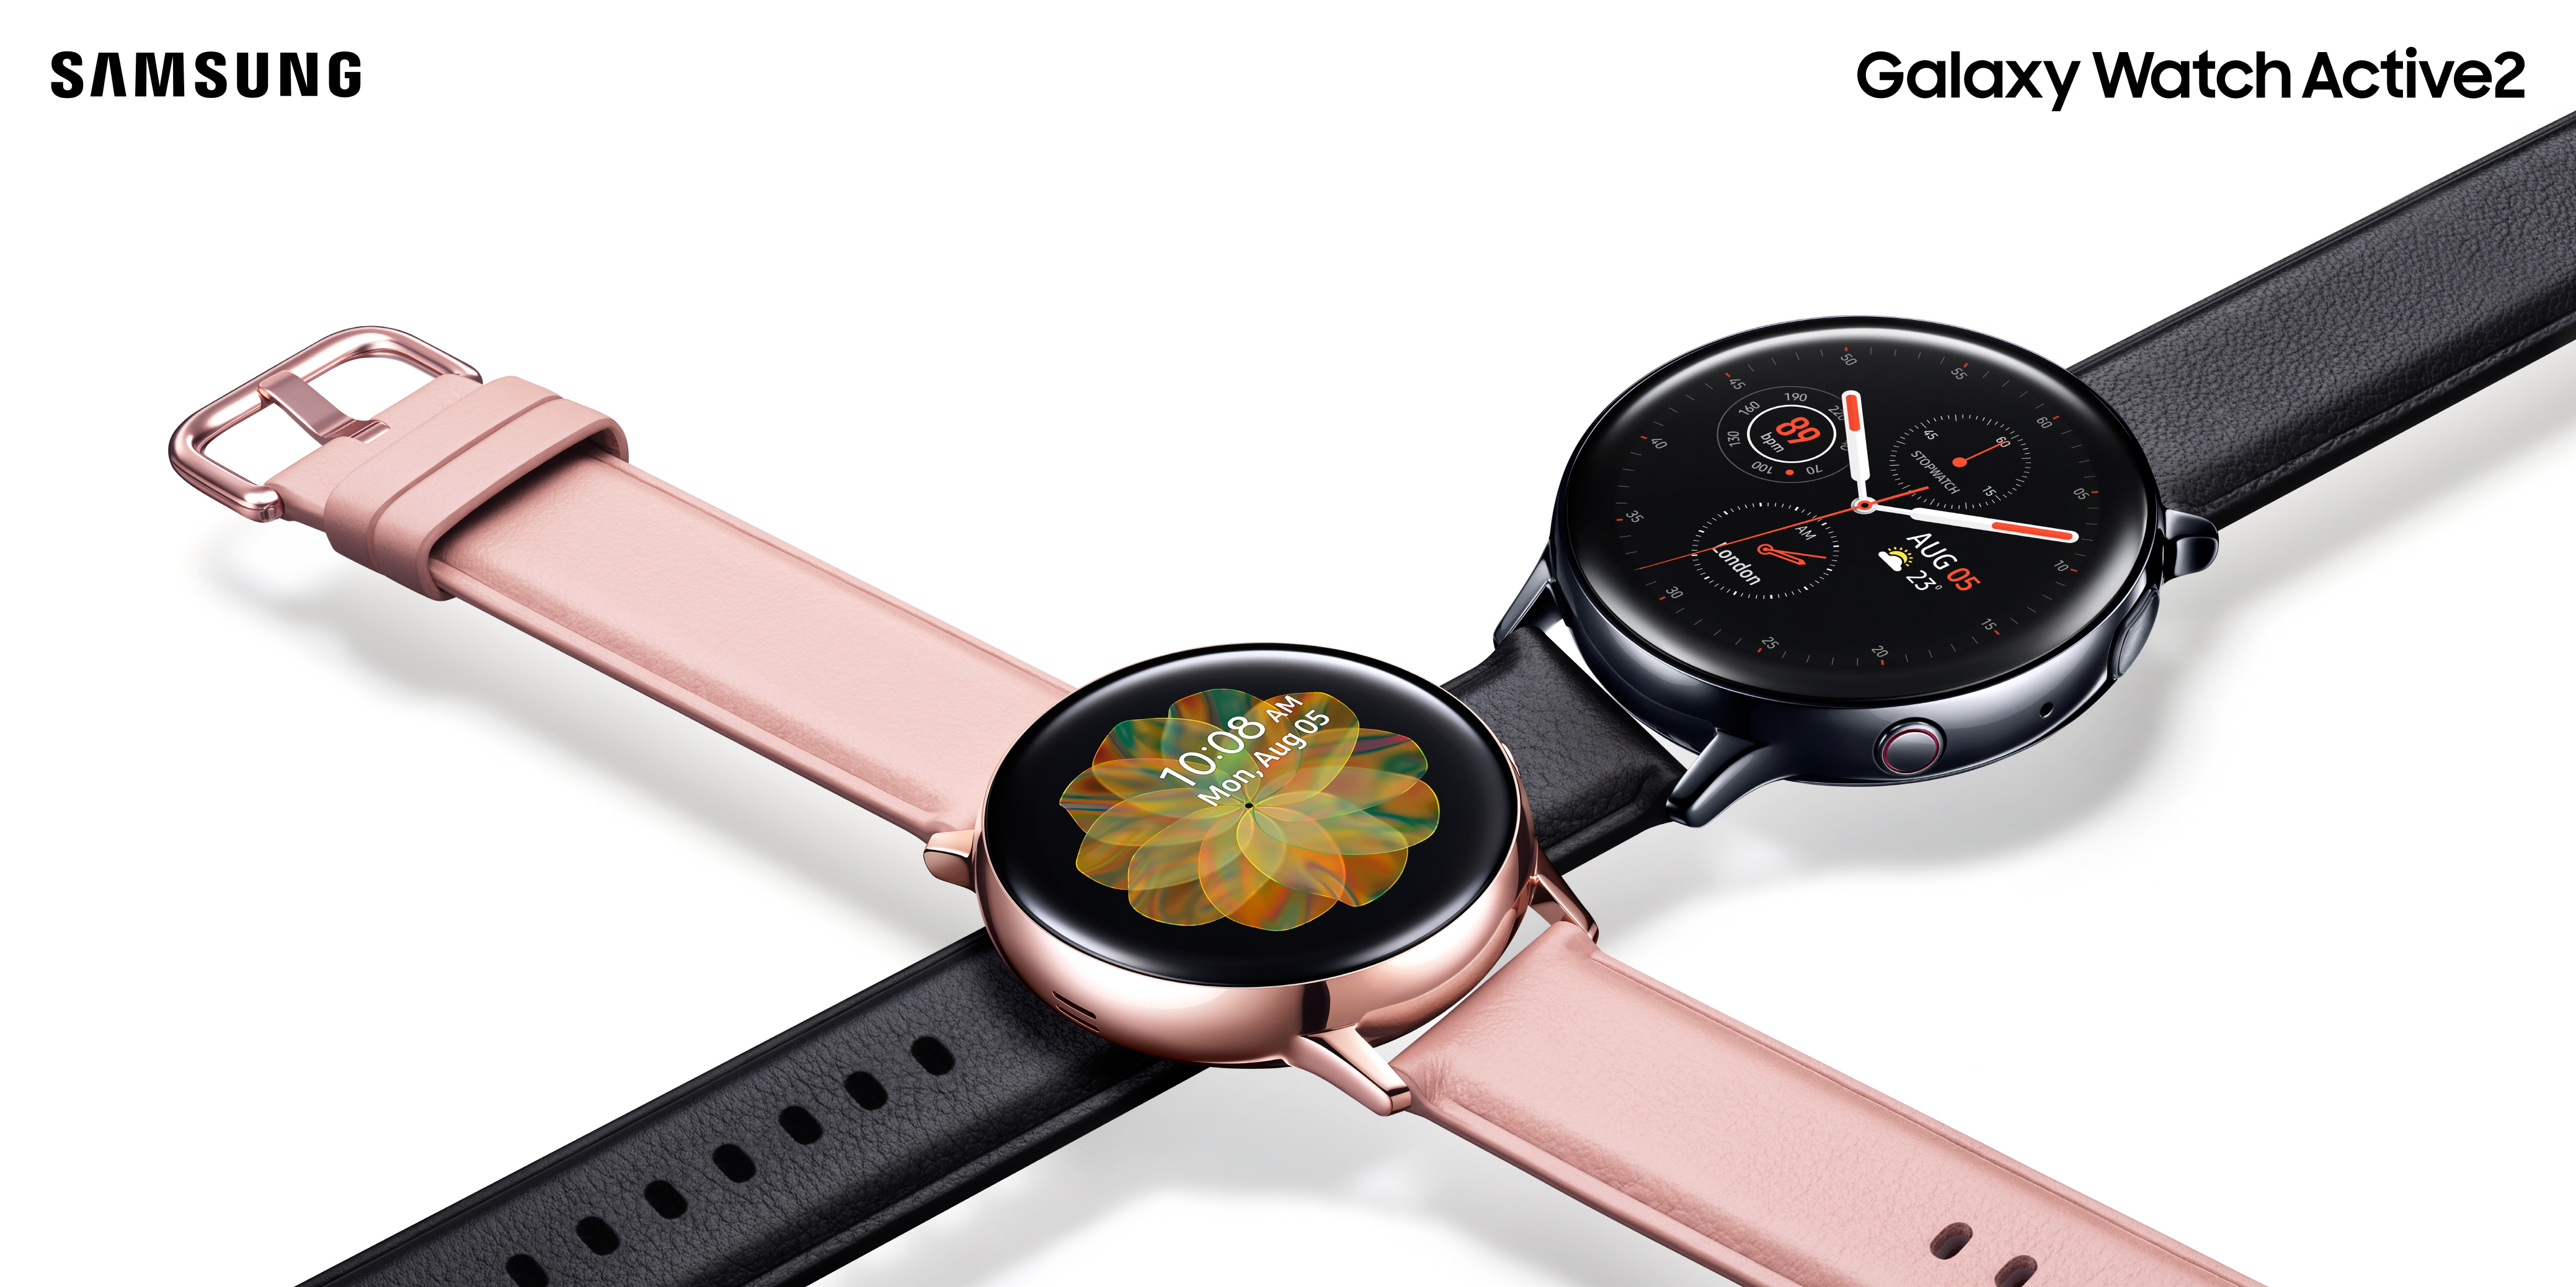 Samsung Galaxy Watch Active 2 cena EKG premiera gdzie kupić najtaniej w Polsce opinie specyfikacja techniczna kiedy EKG i wykrywanie upadków